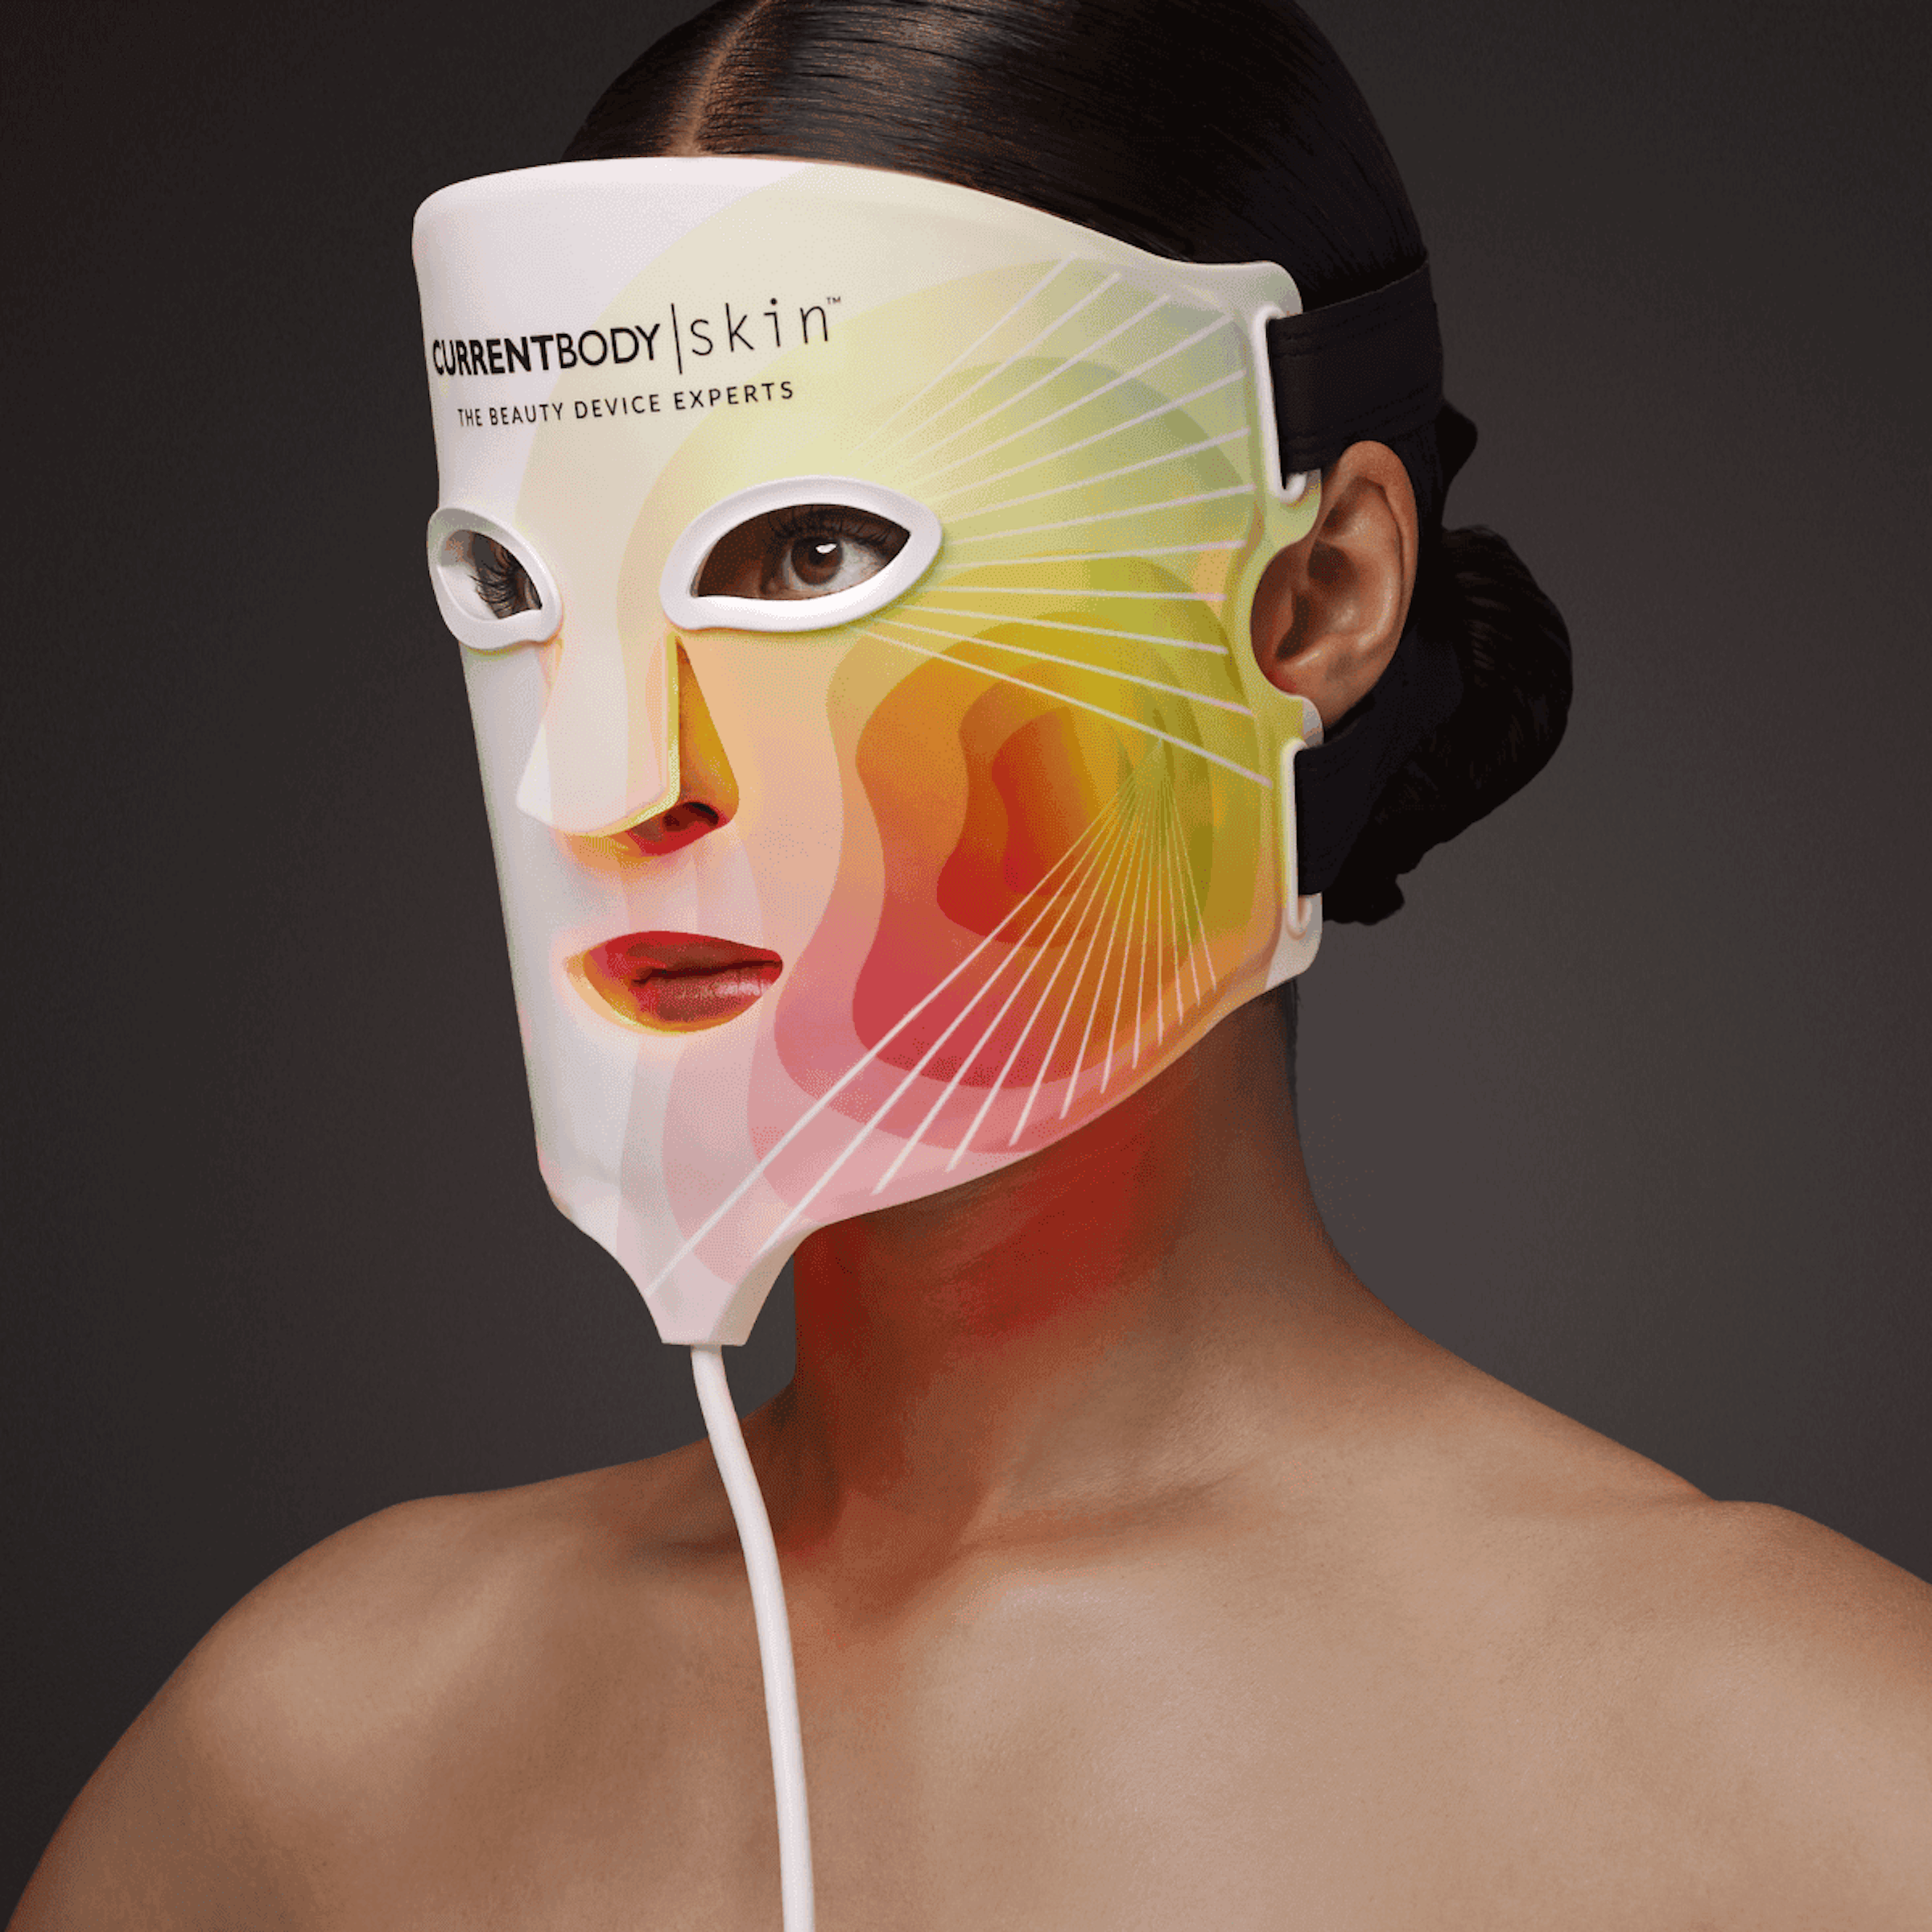 「LED 4イン1 マスク」では、360個のLEDを搭載することで、アジア人の肌悩みにアプローチ 